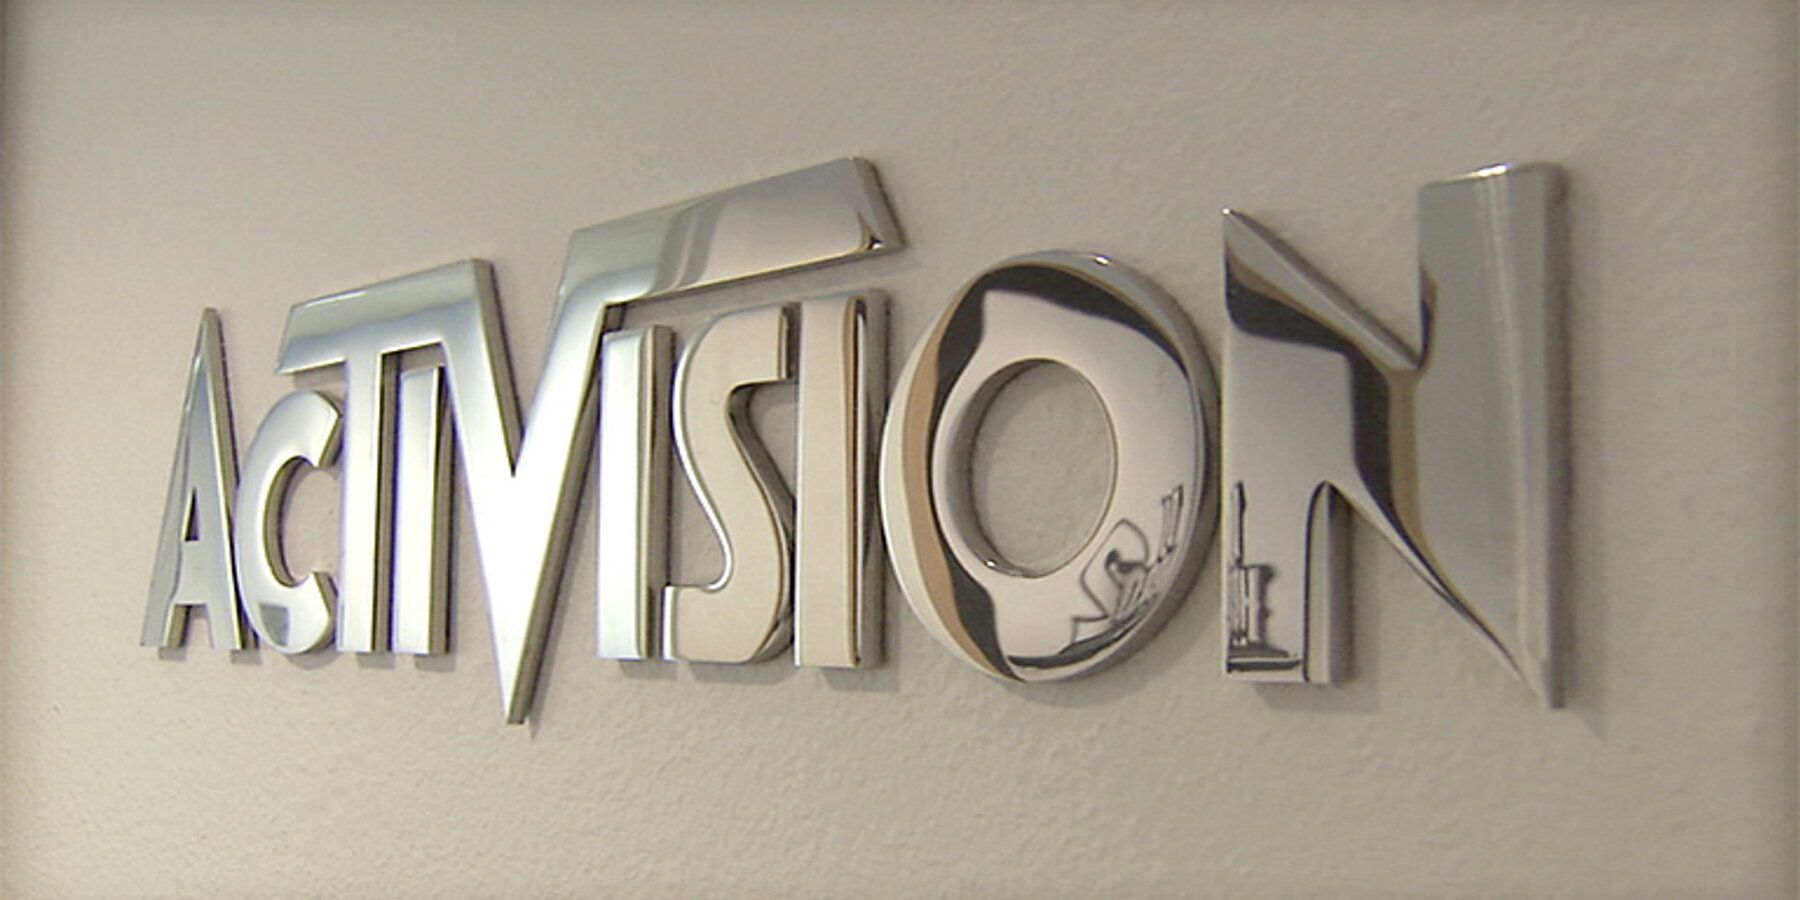 Activision Wall Logo